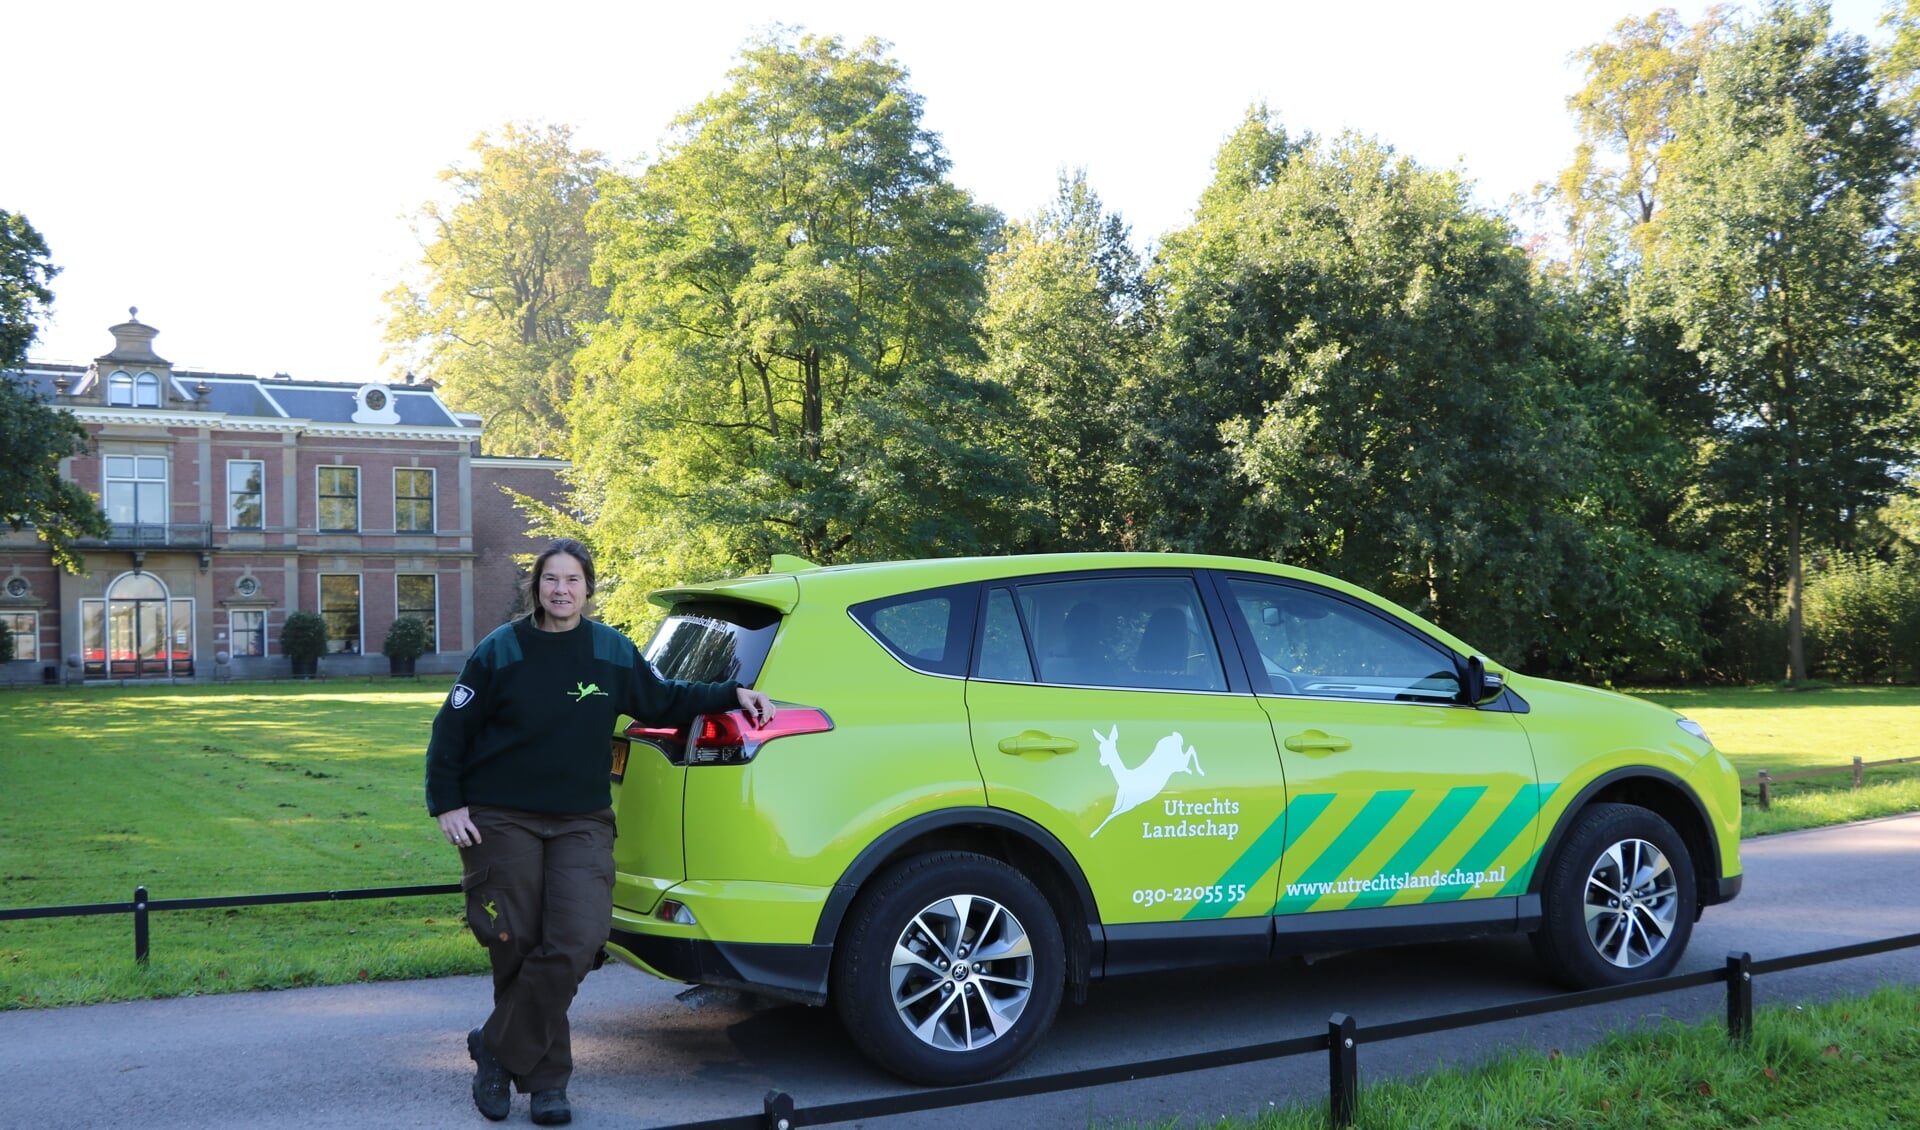  Thea Sciarone is één van de toezichthouders van Utrechts Landschap die in een hybride wagen rijdt.